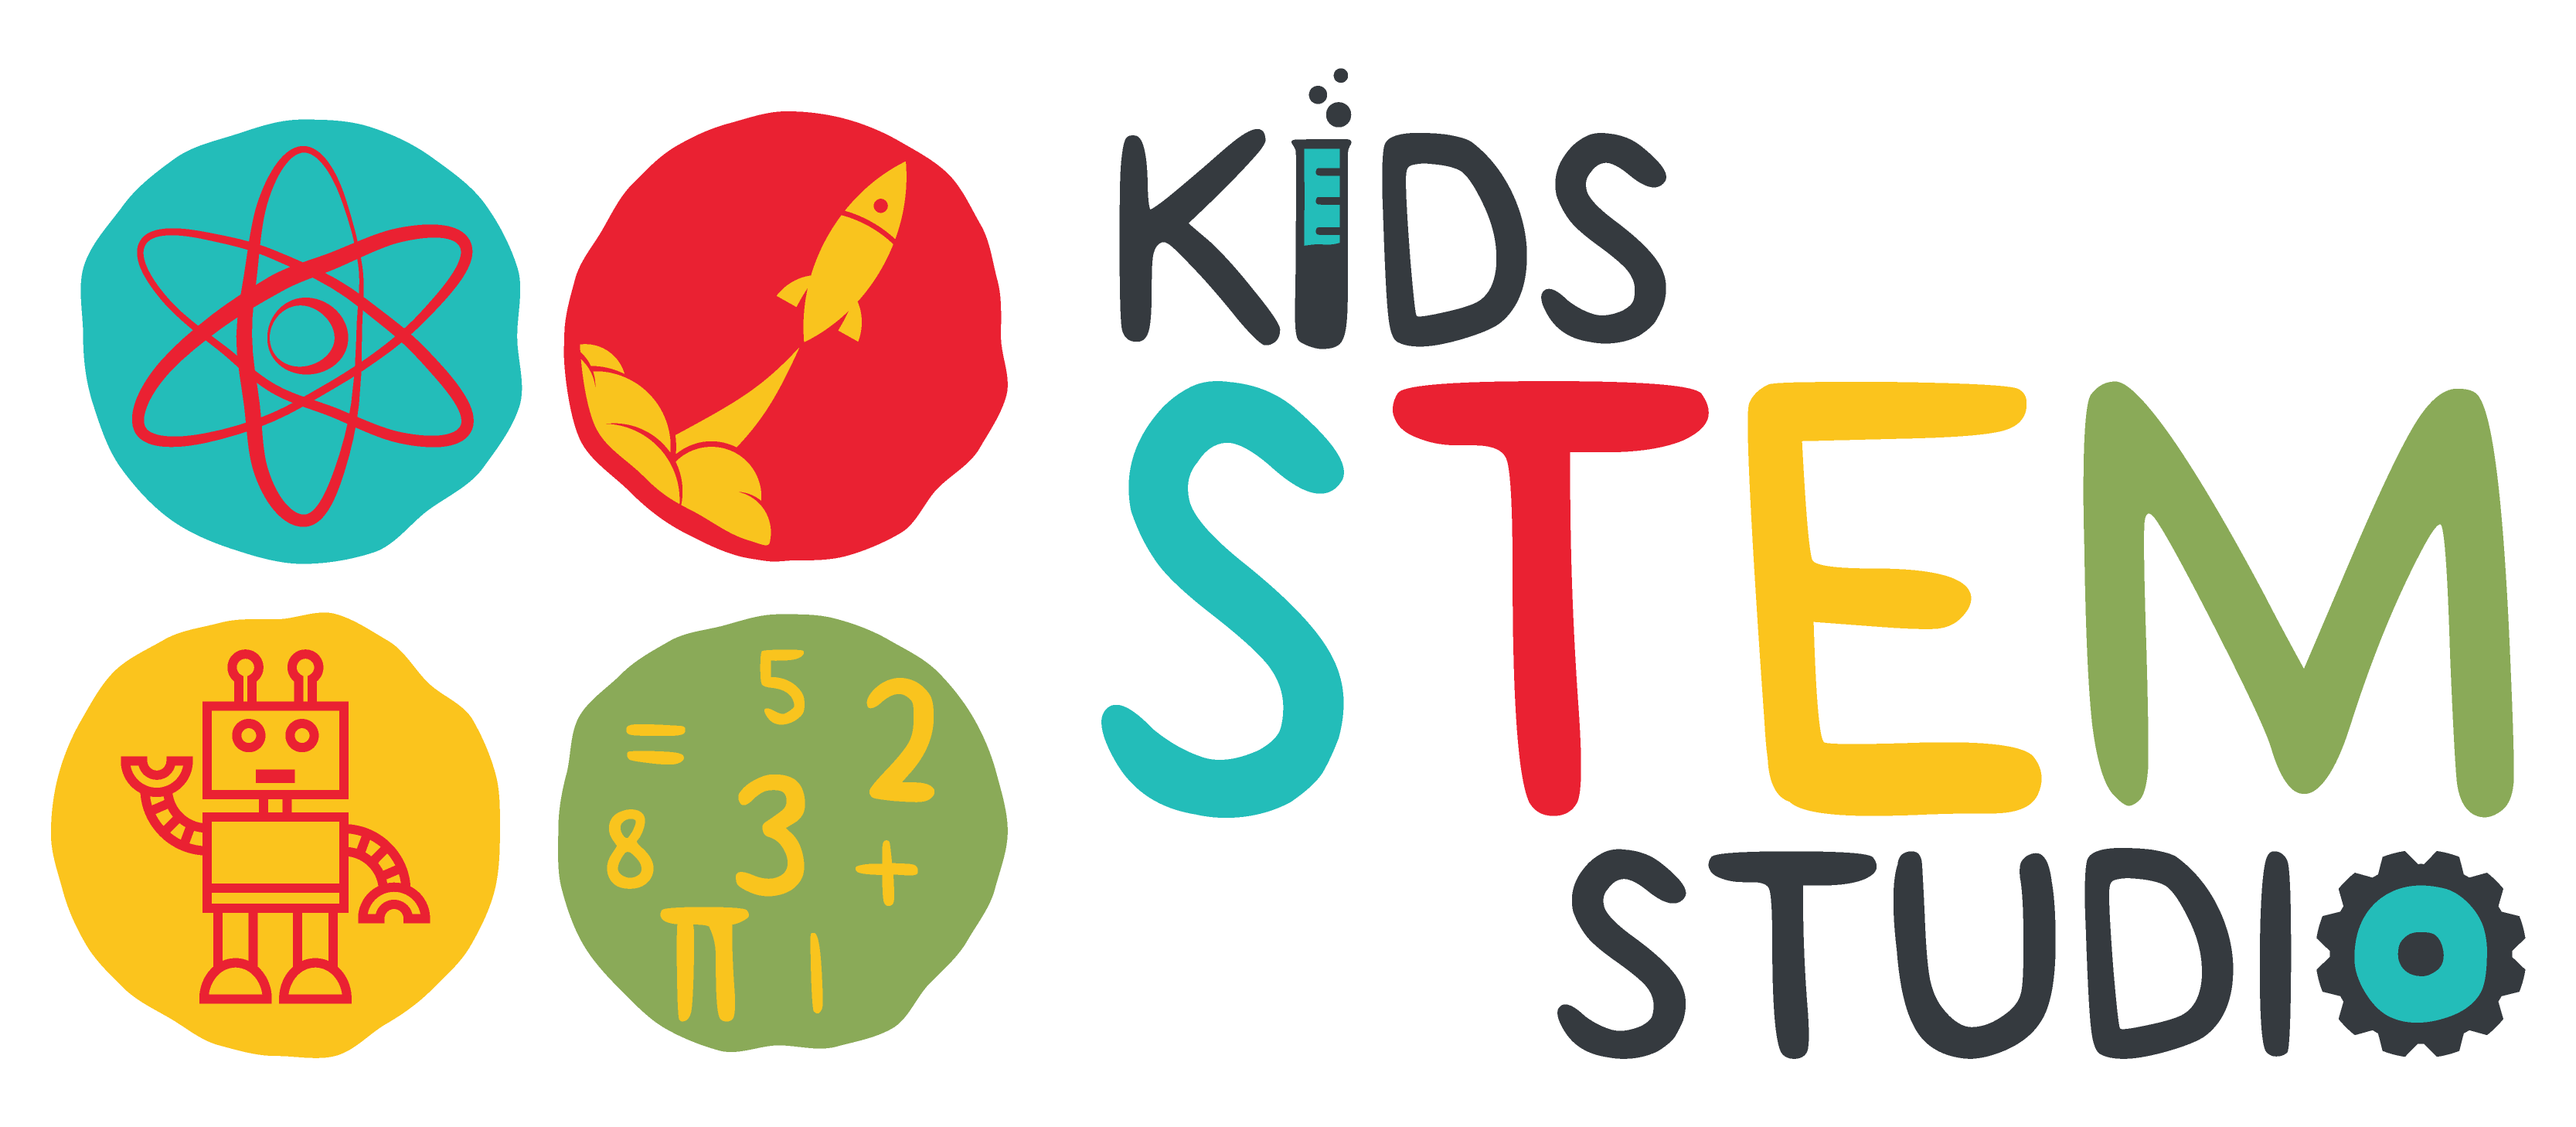 Kids Stem Studio Logo Design 